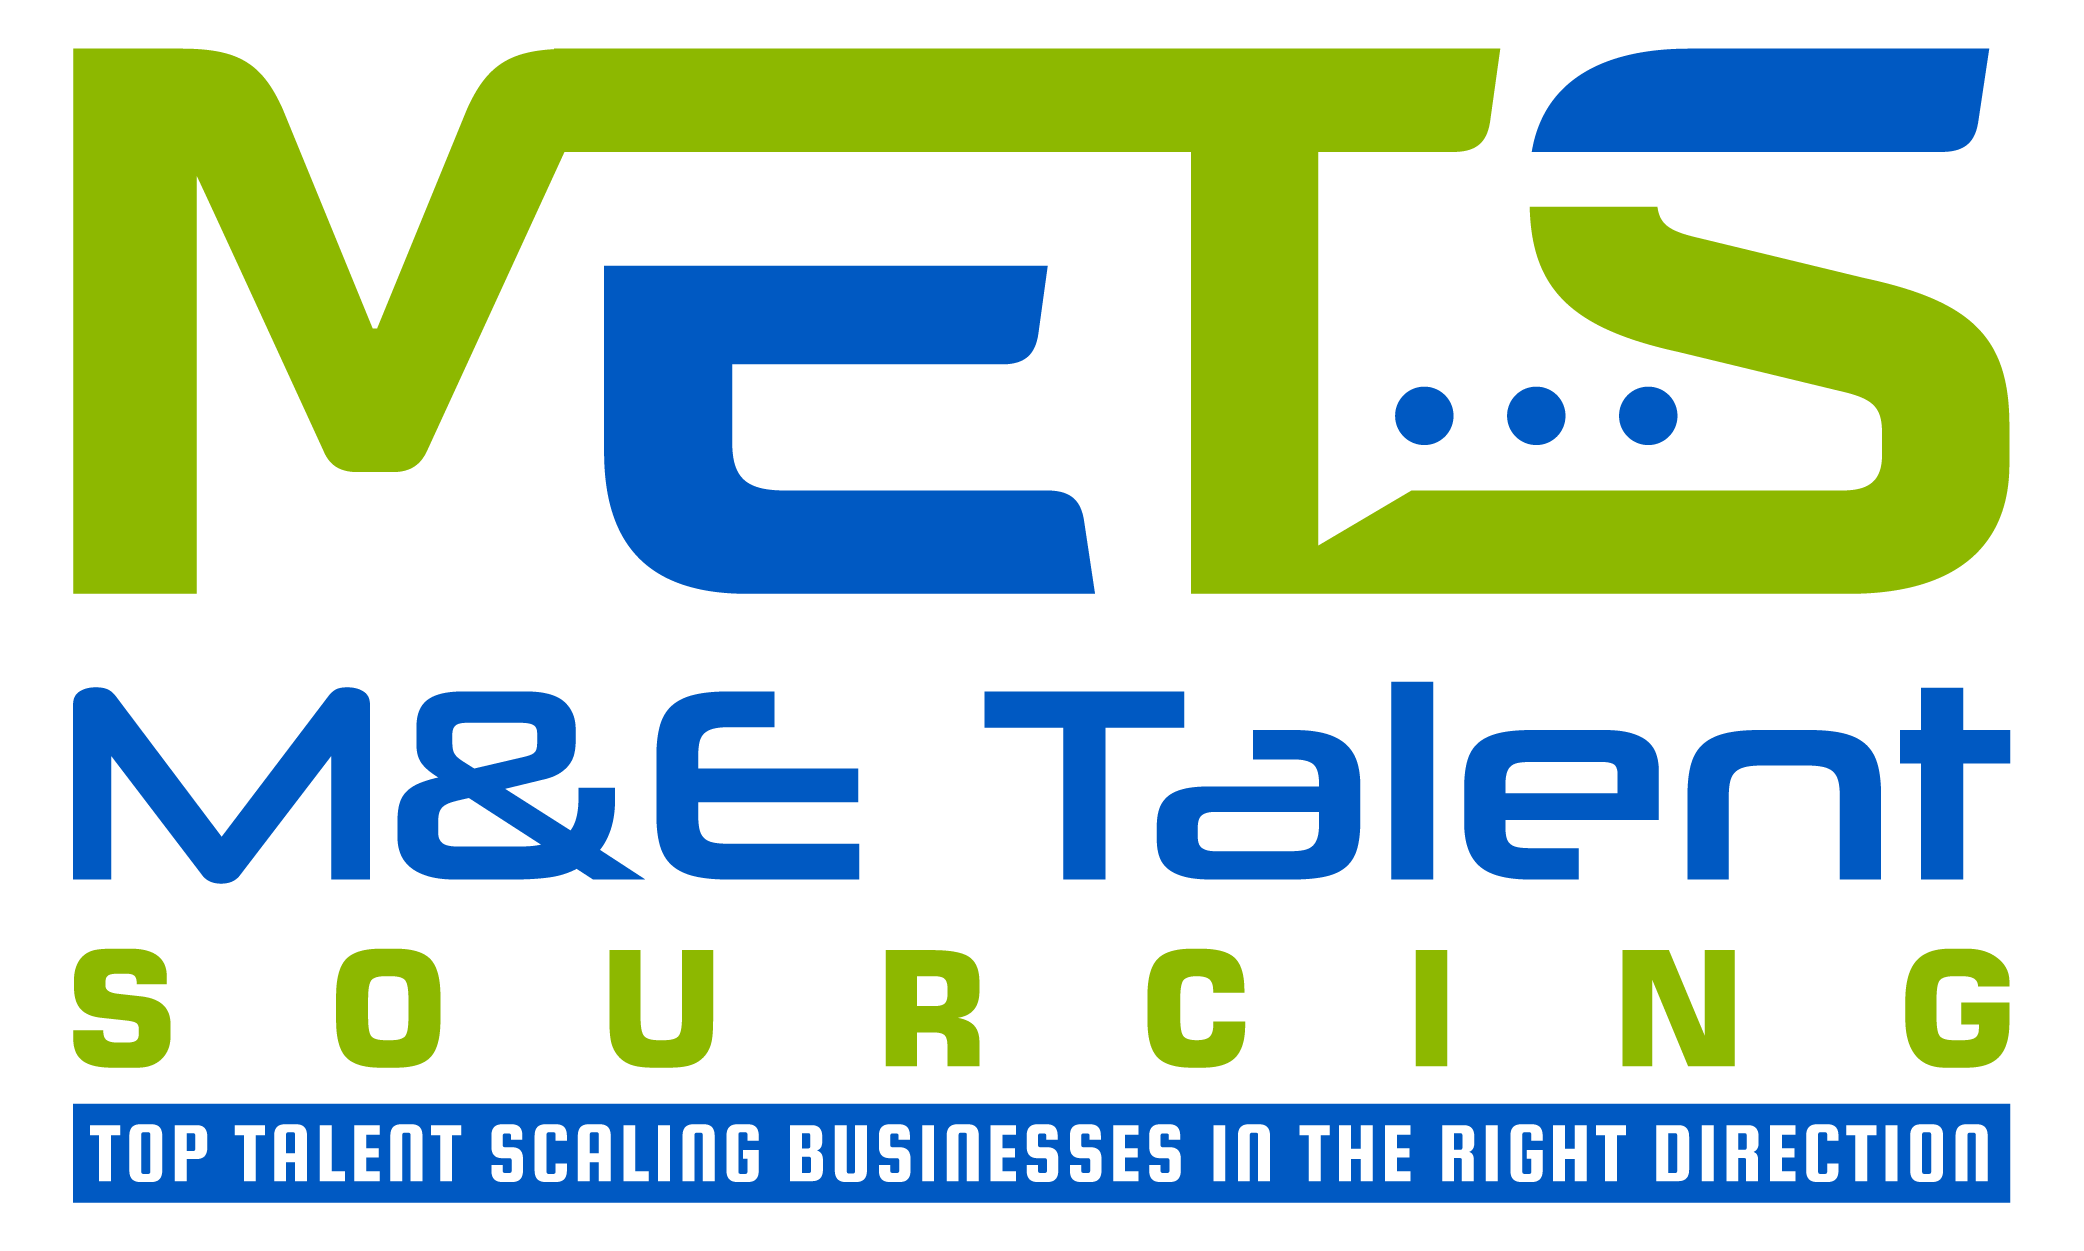 M&E Talent Sourcing